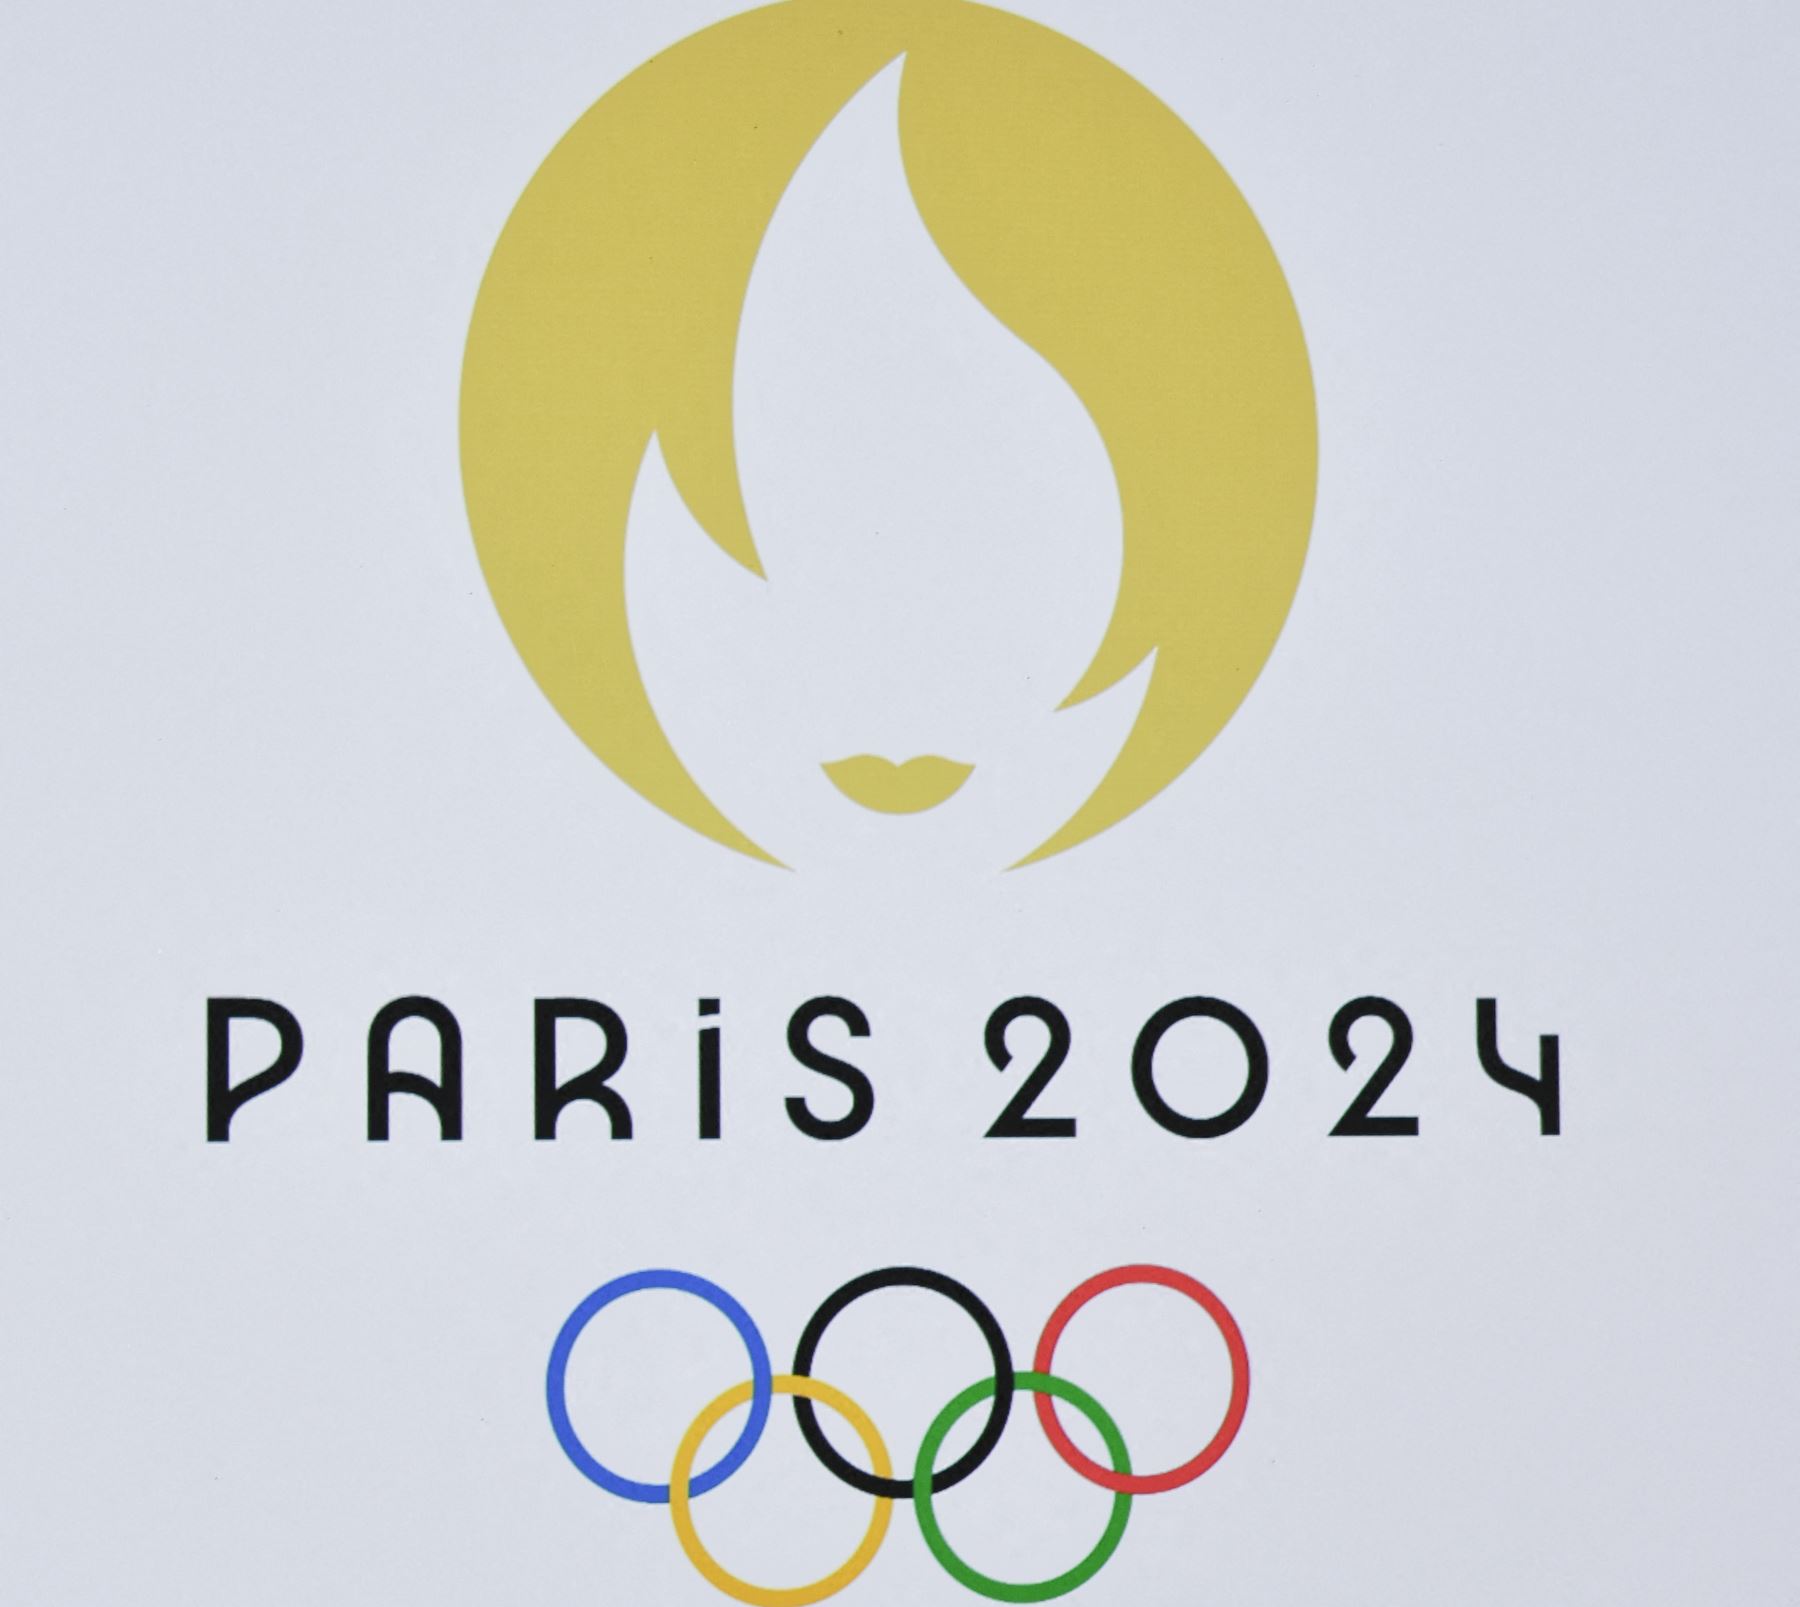 La maratón París 2024 será exigente de principio a fin.